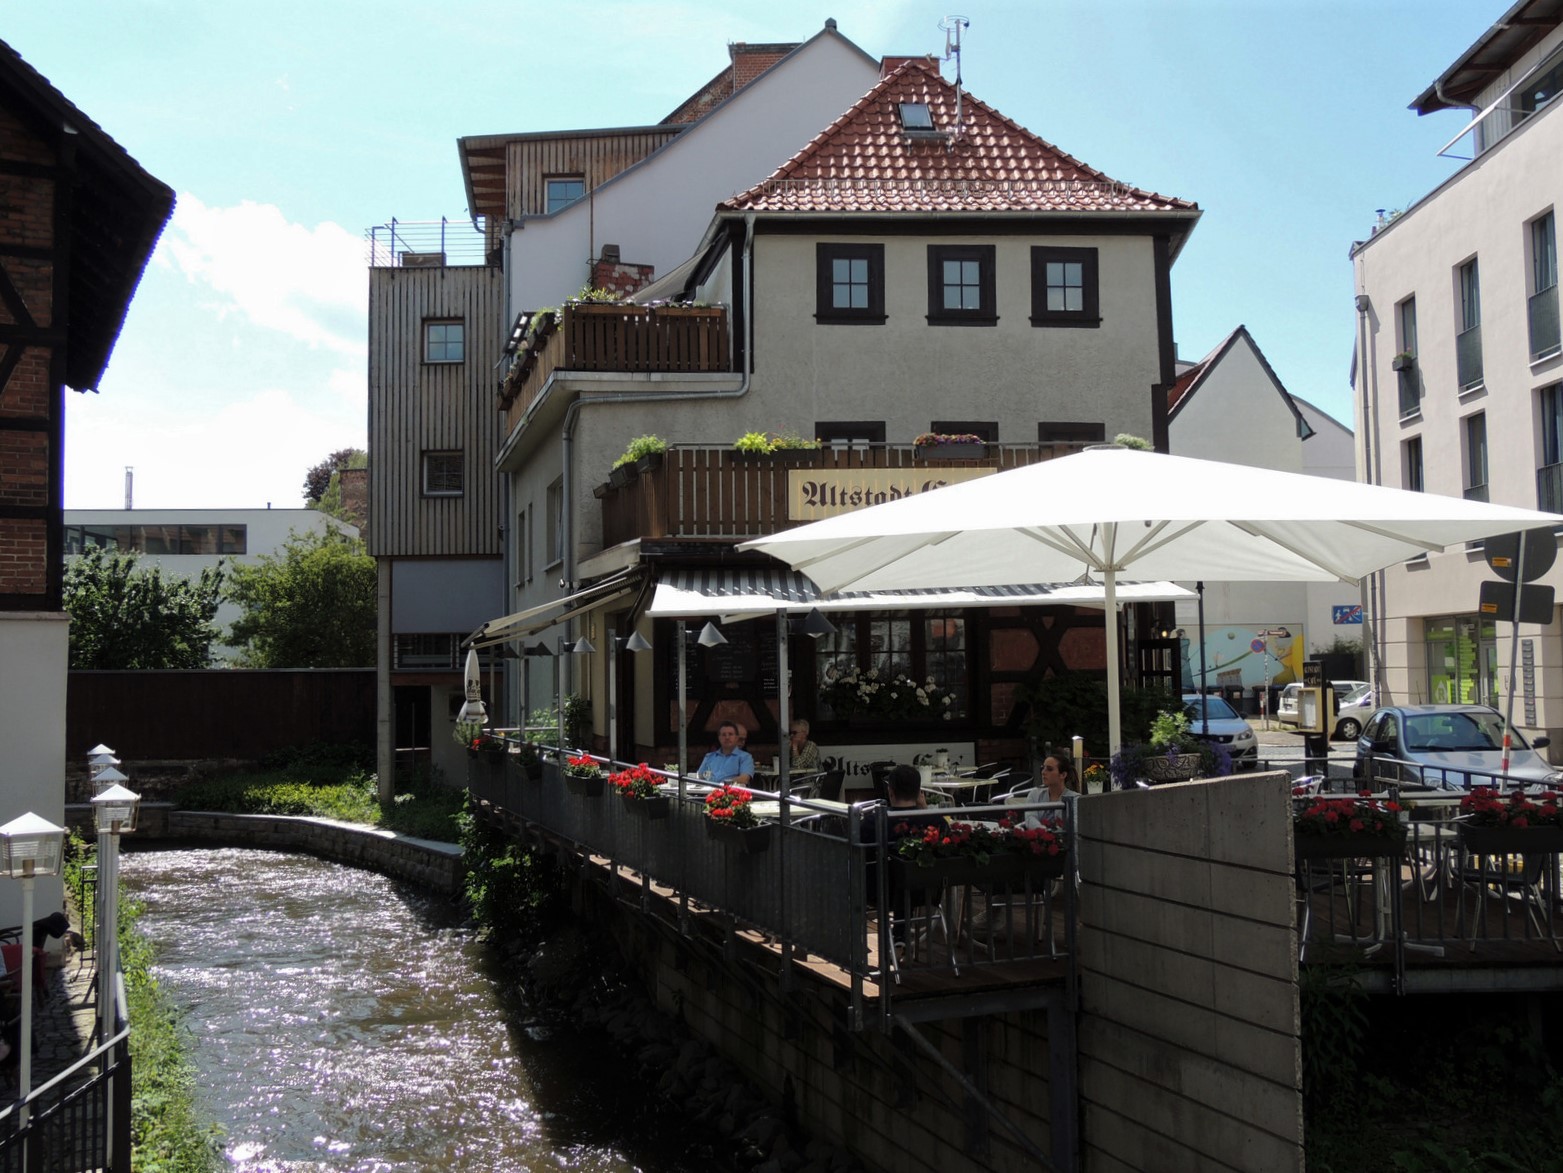 Altstadtcafé Erfurt